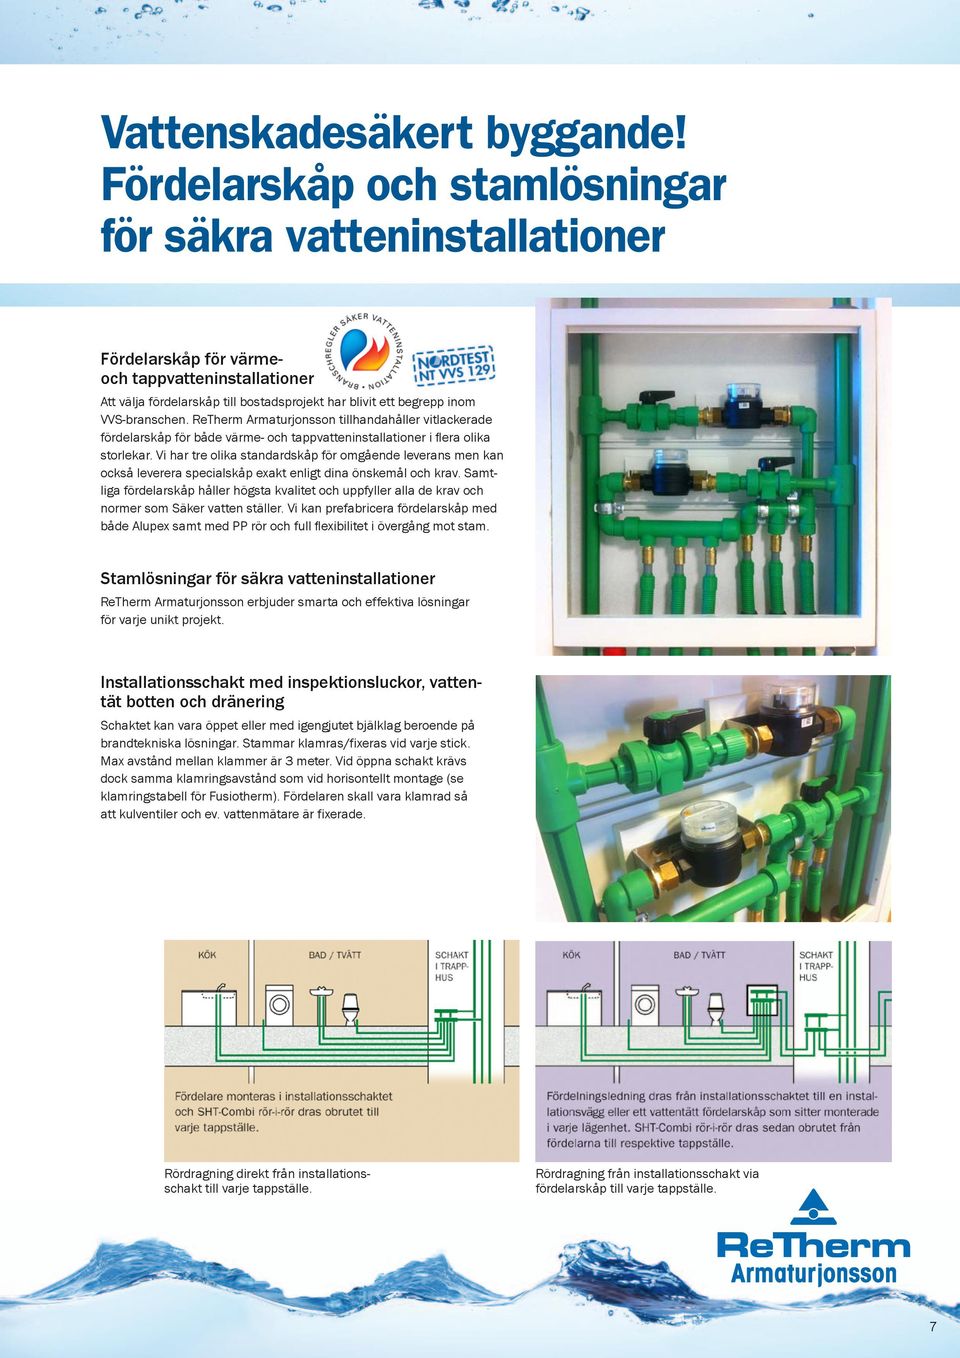 ReTherm Armaturjonsson tillhandahåller vitlackerade fördelarskåp för både värme- och tappvatteninstallationer i flera olika storlekar.